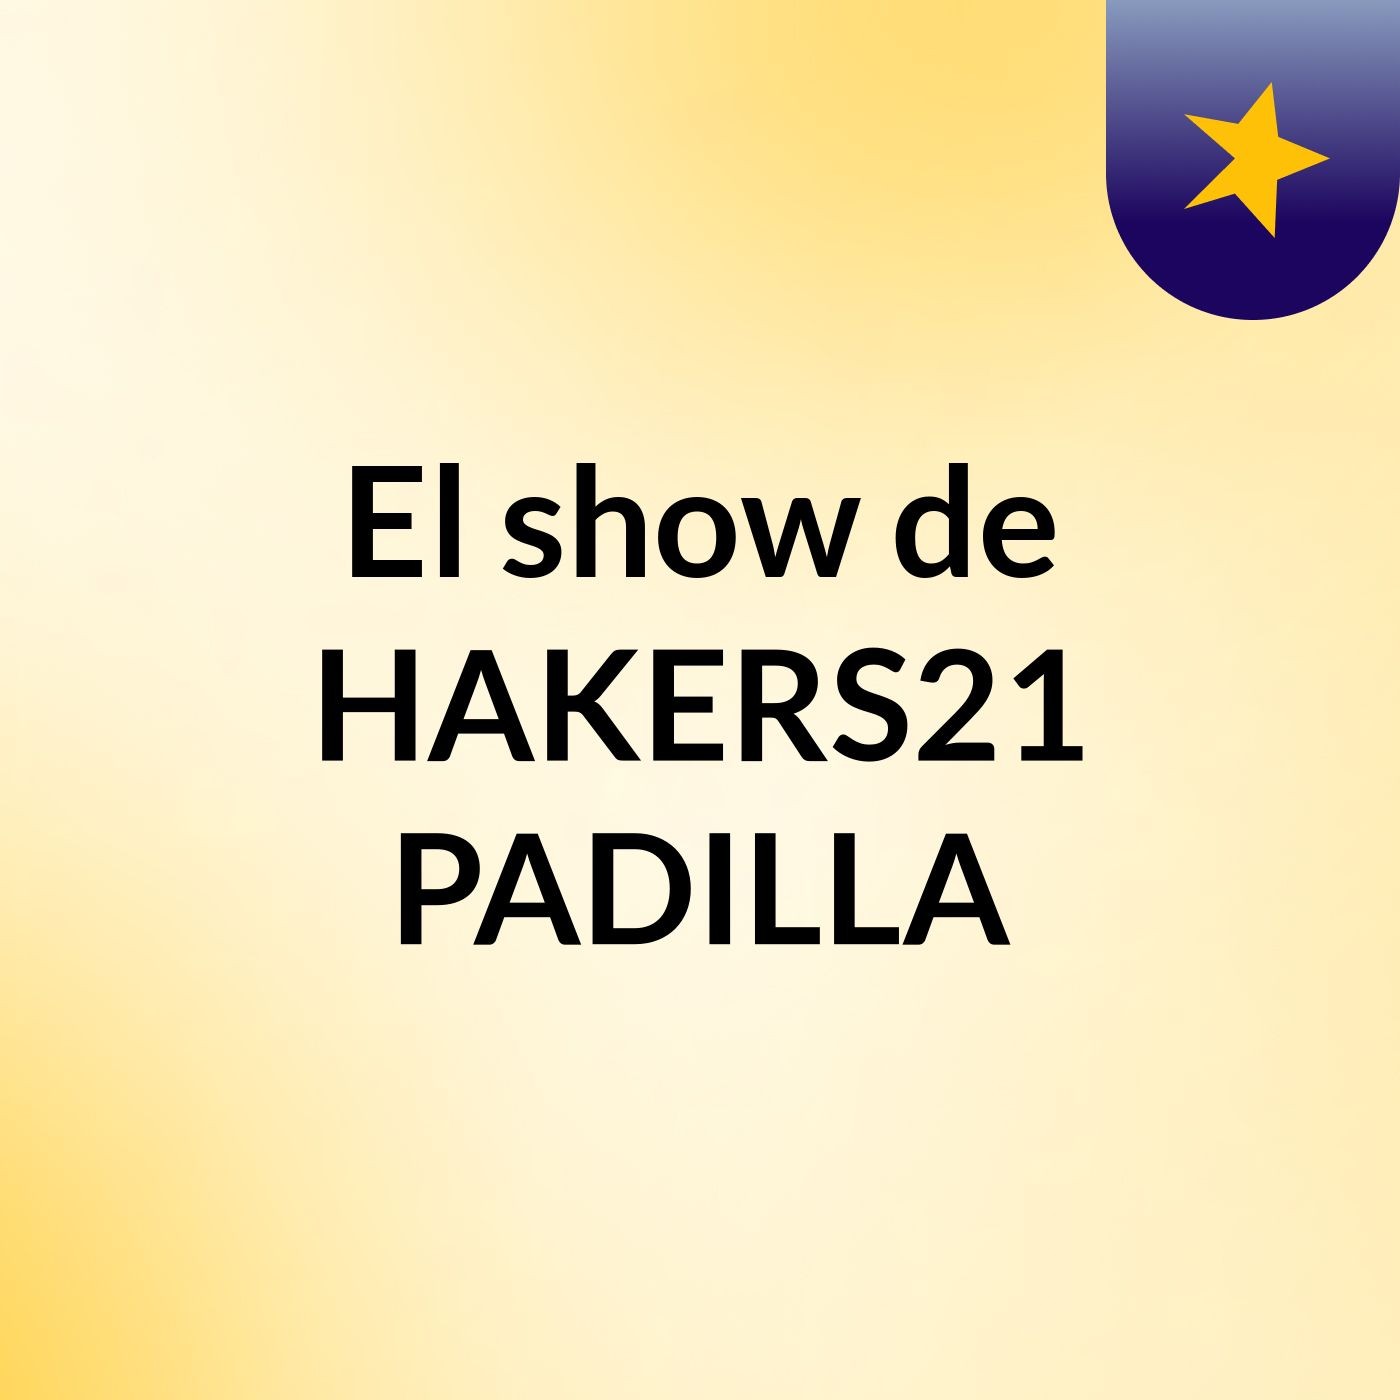 El show de HAKERS21 PADILLA